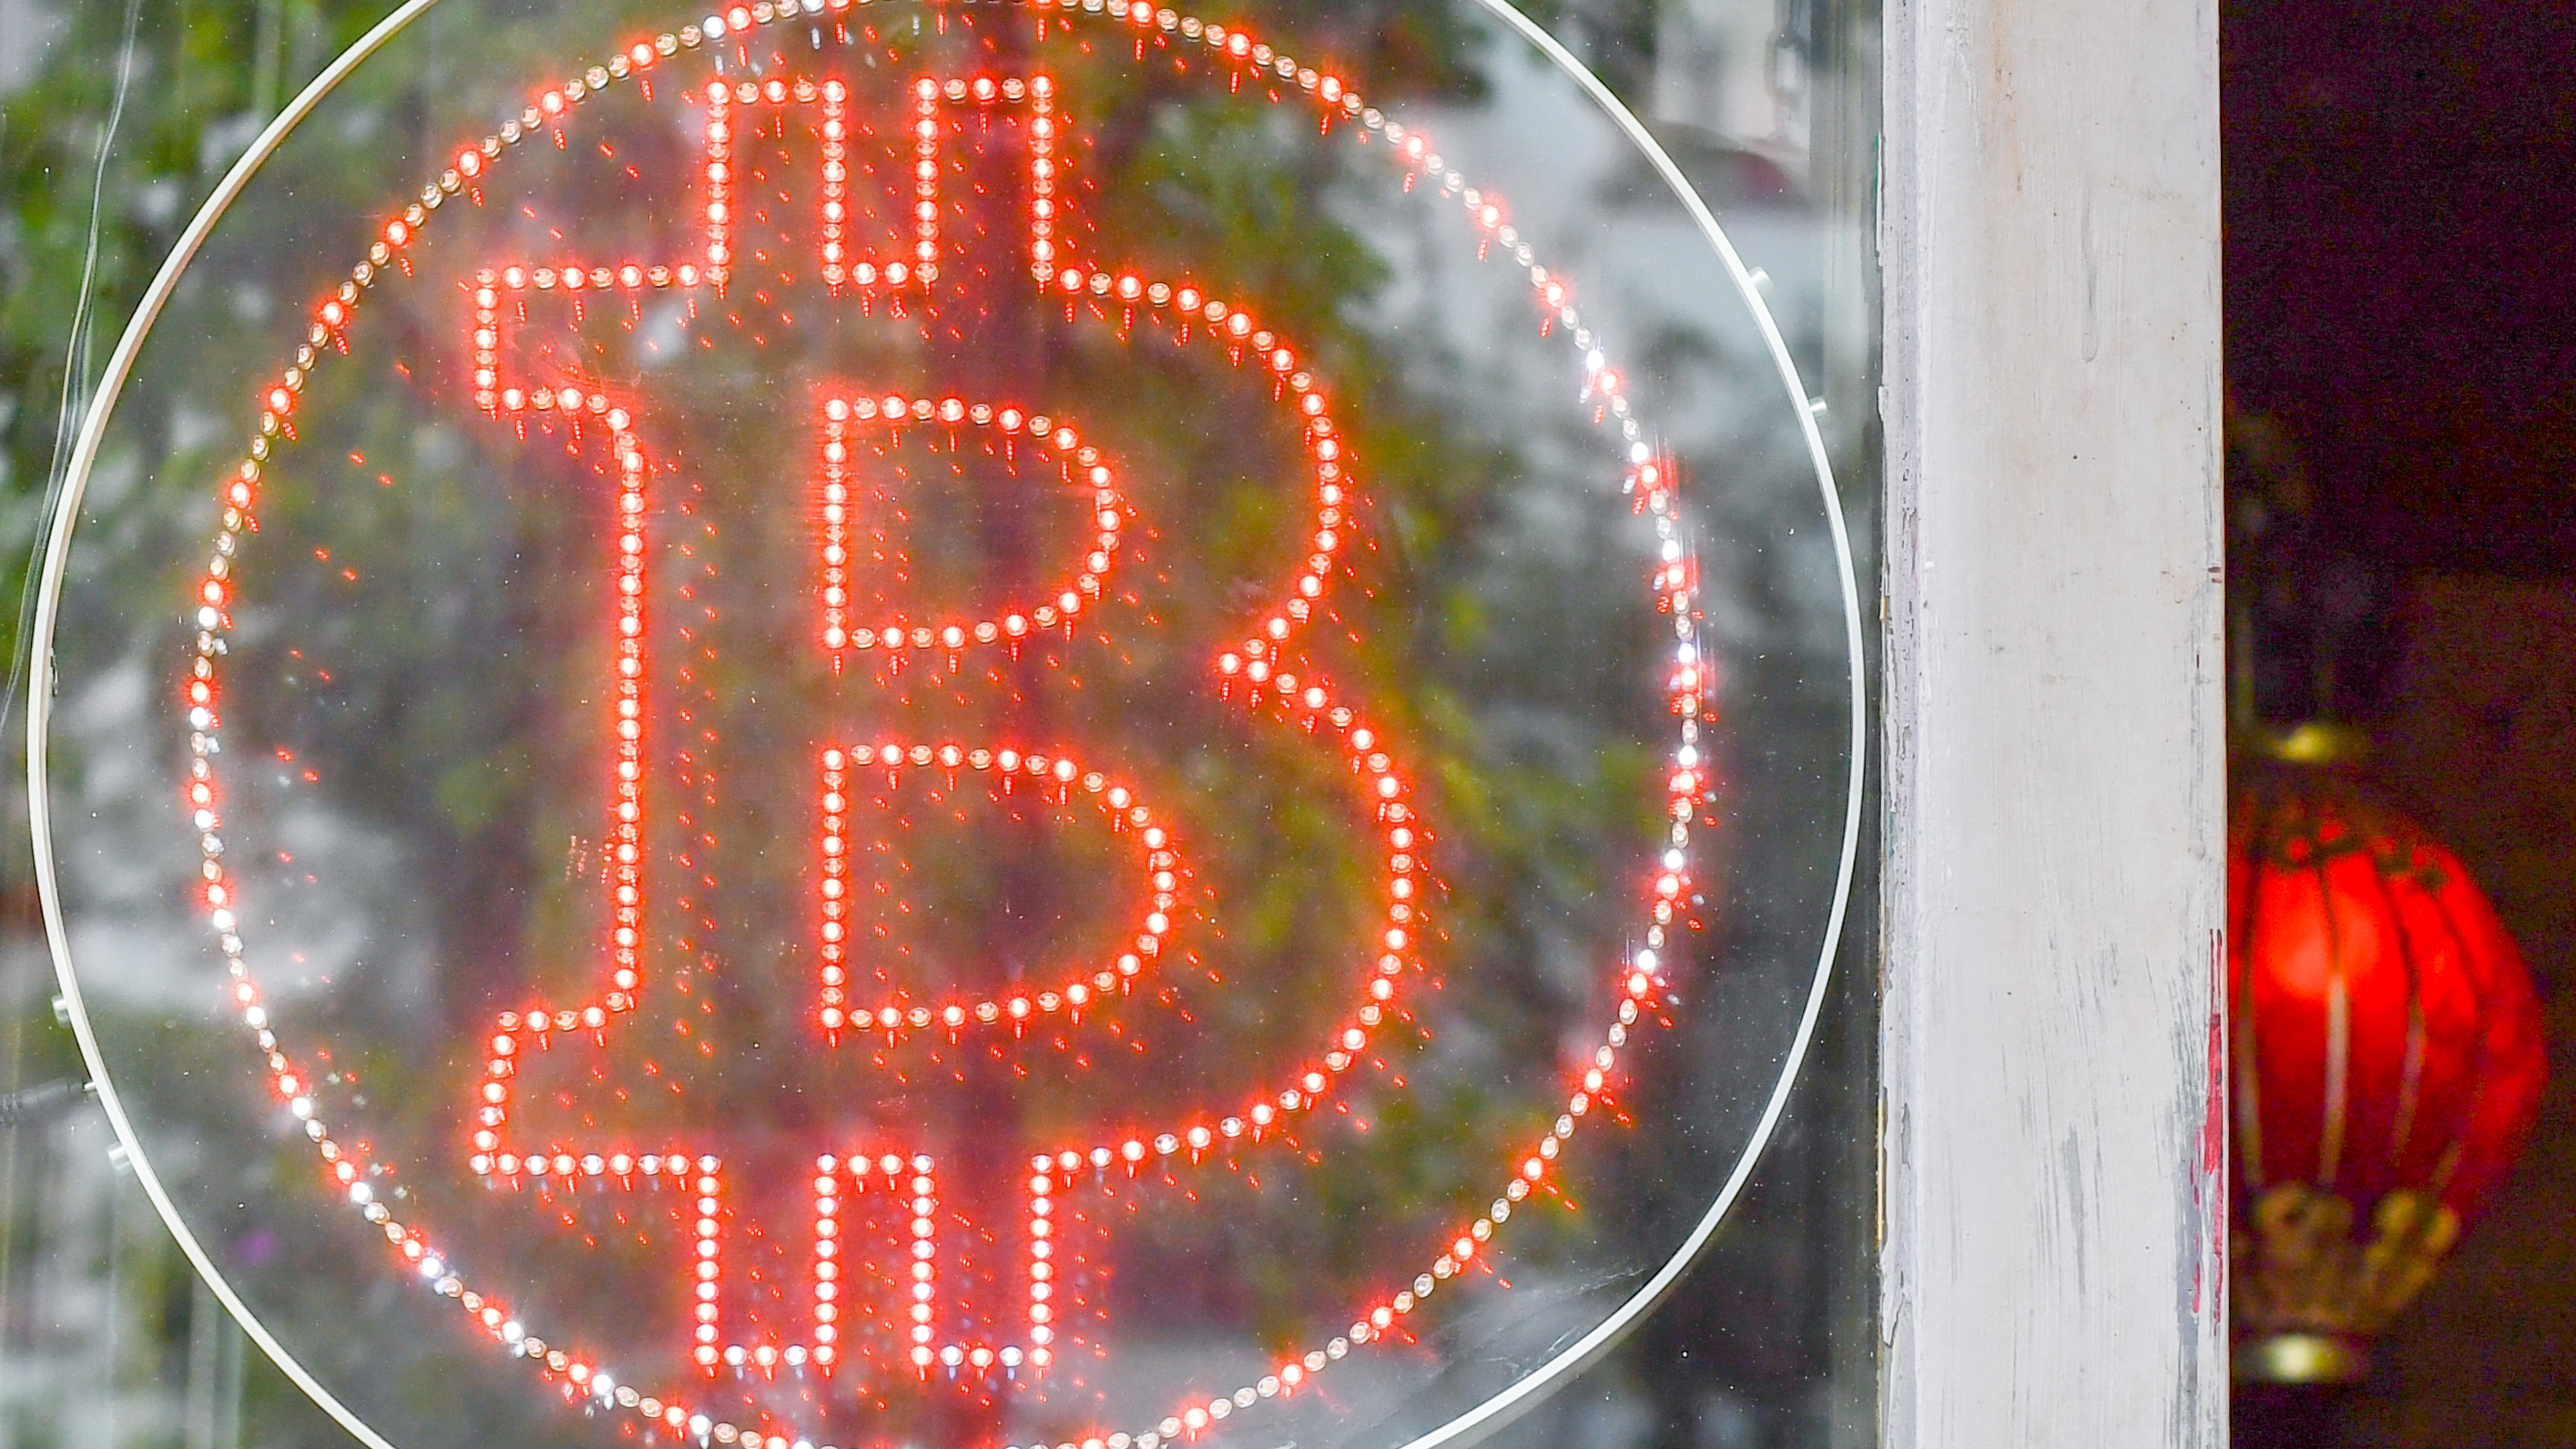 Nach kräftiger Korrektur: Sollten Anleger jetzt Bitcoin kaufen oder abwarten?